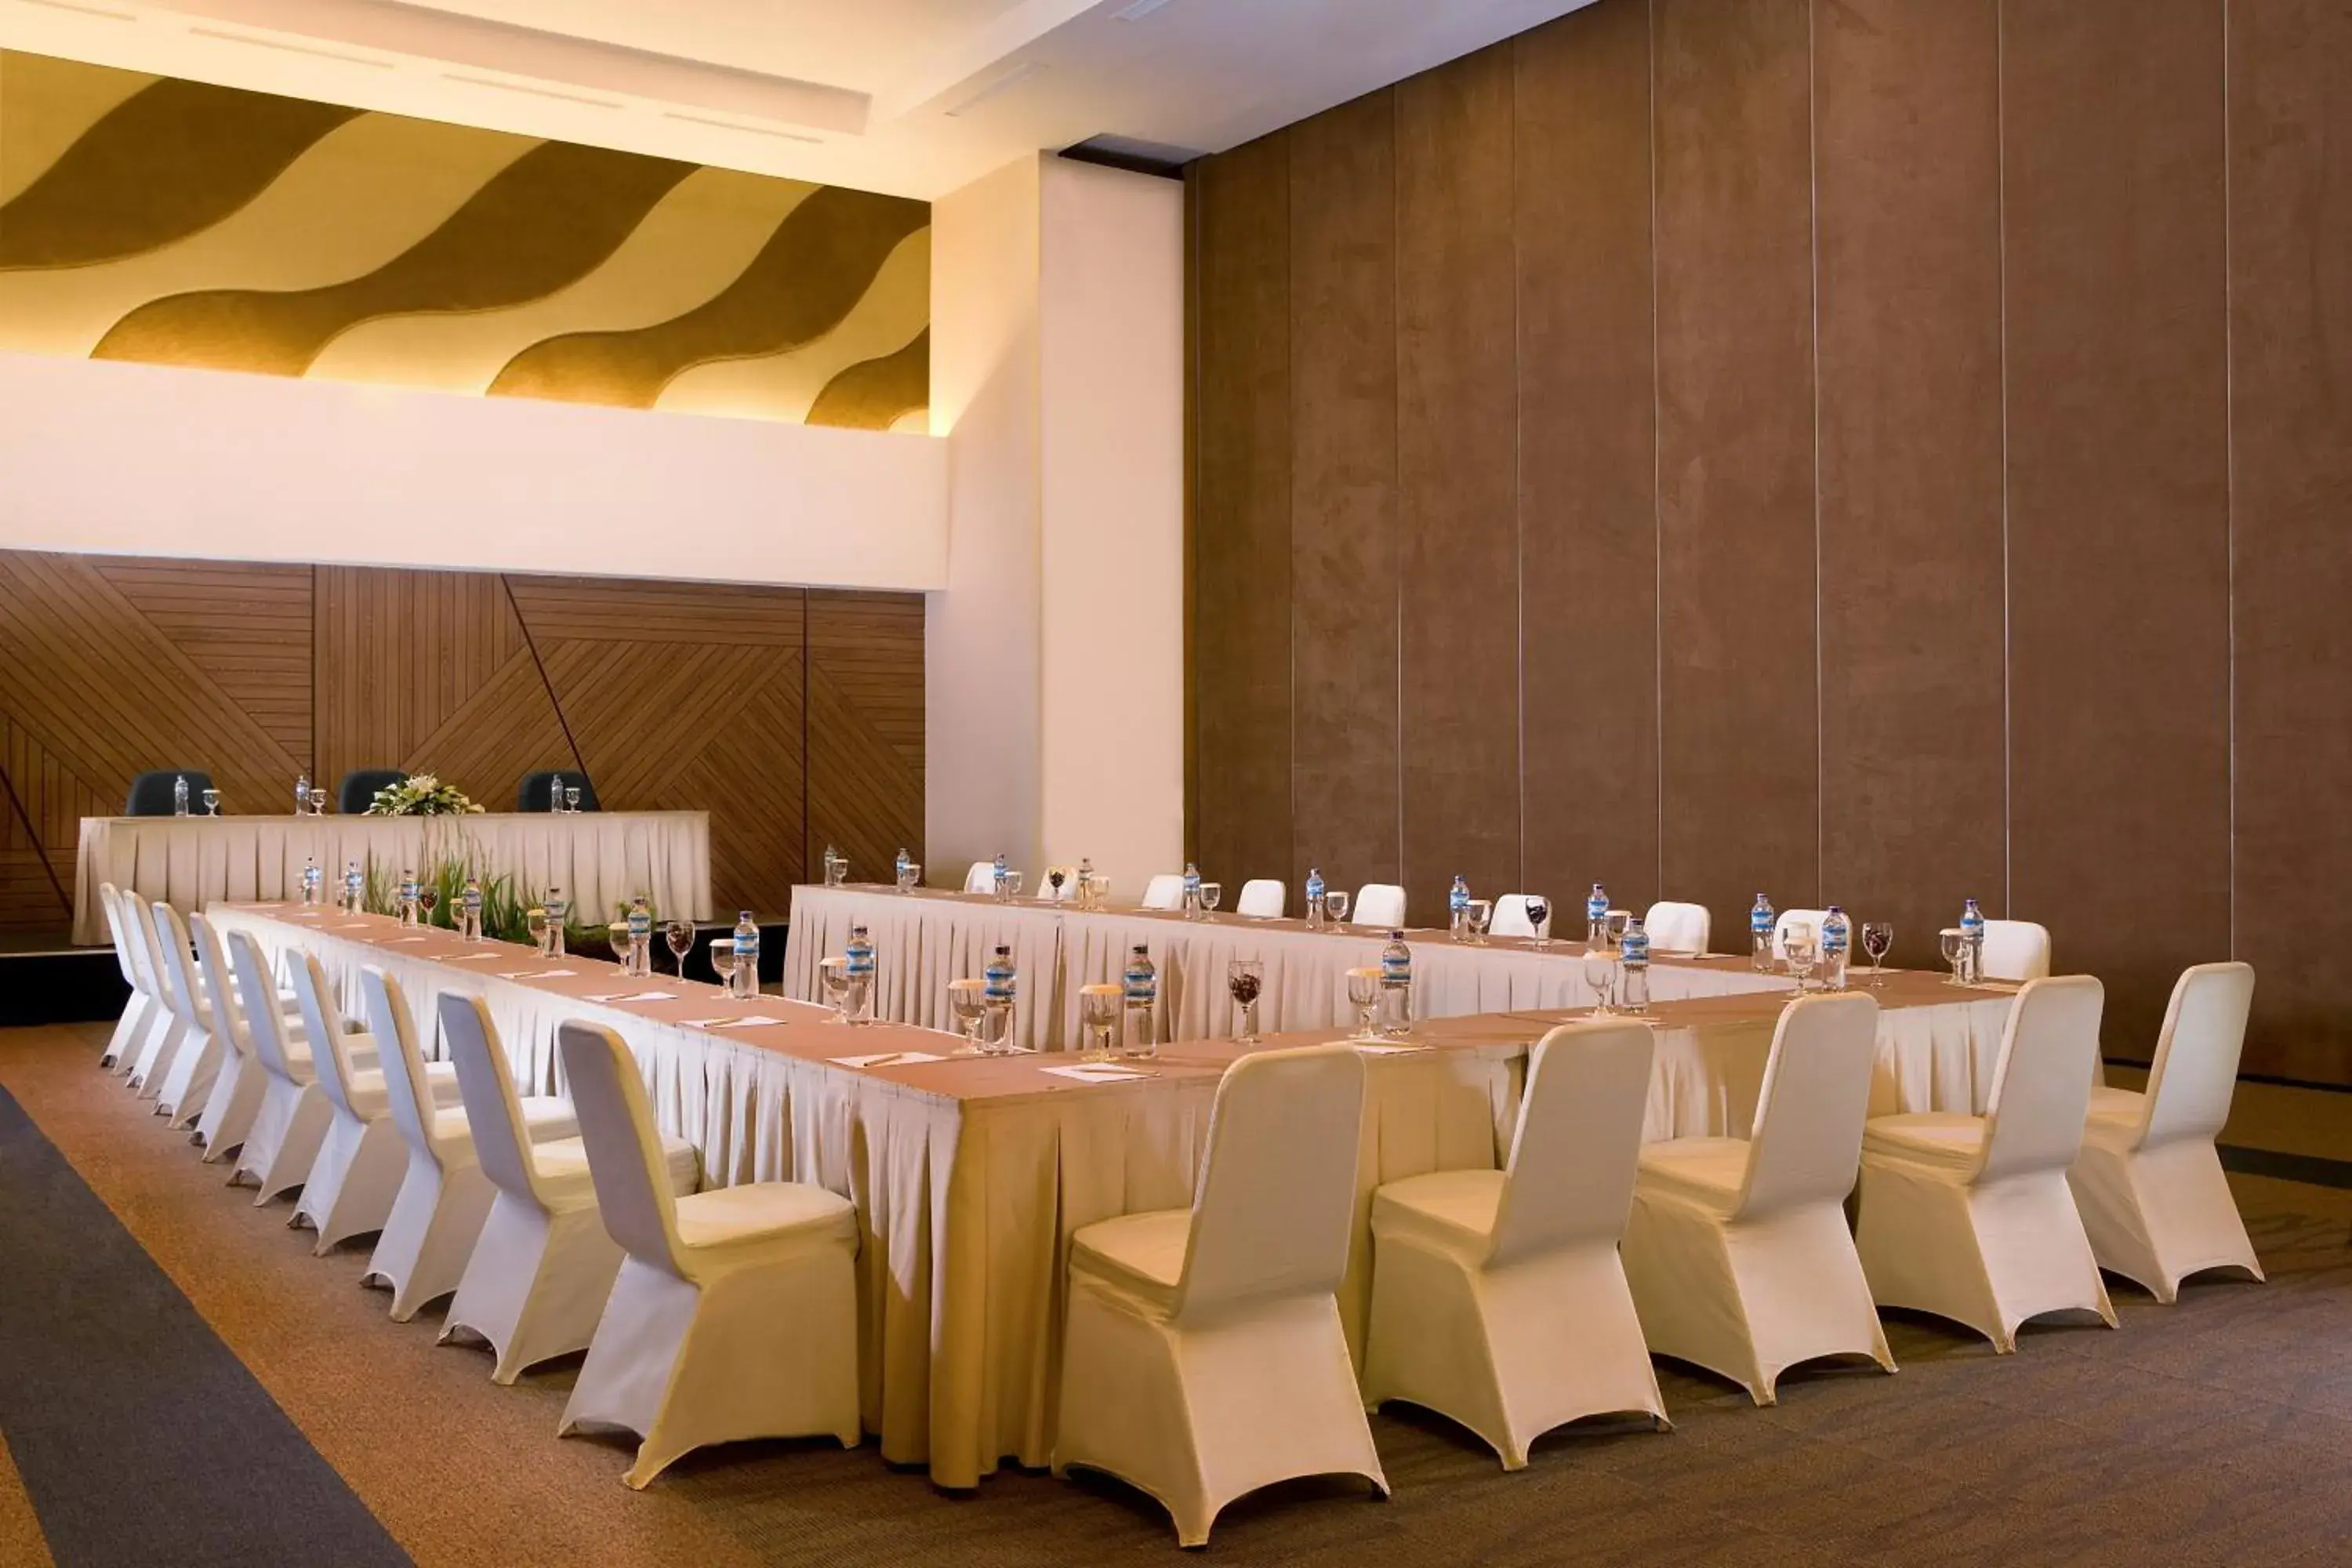 Banquet/Function facilities, Banquet Facilities in Hotel Santika Bangka